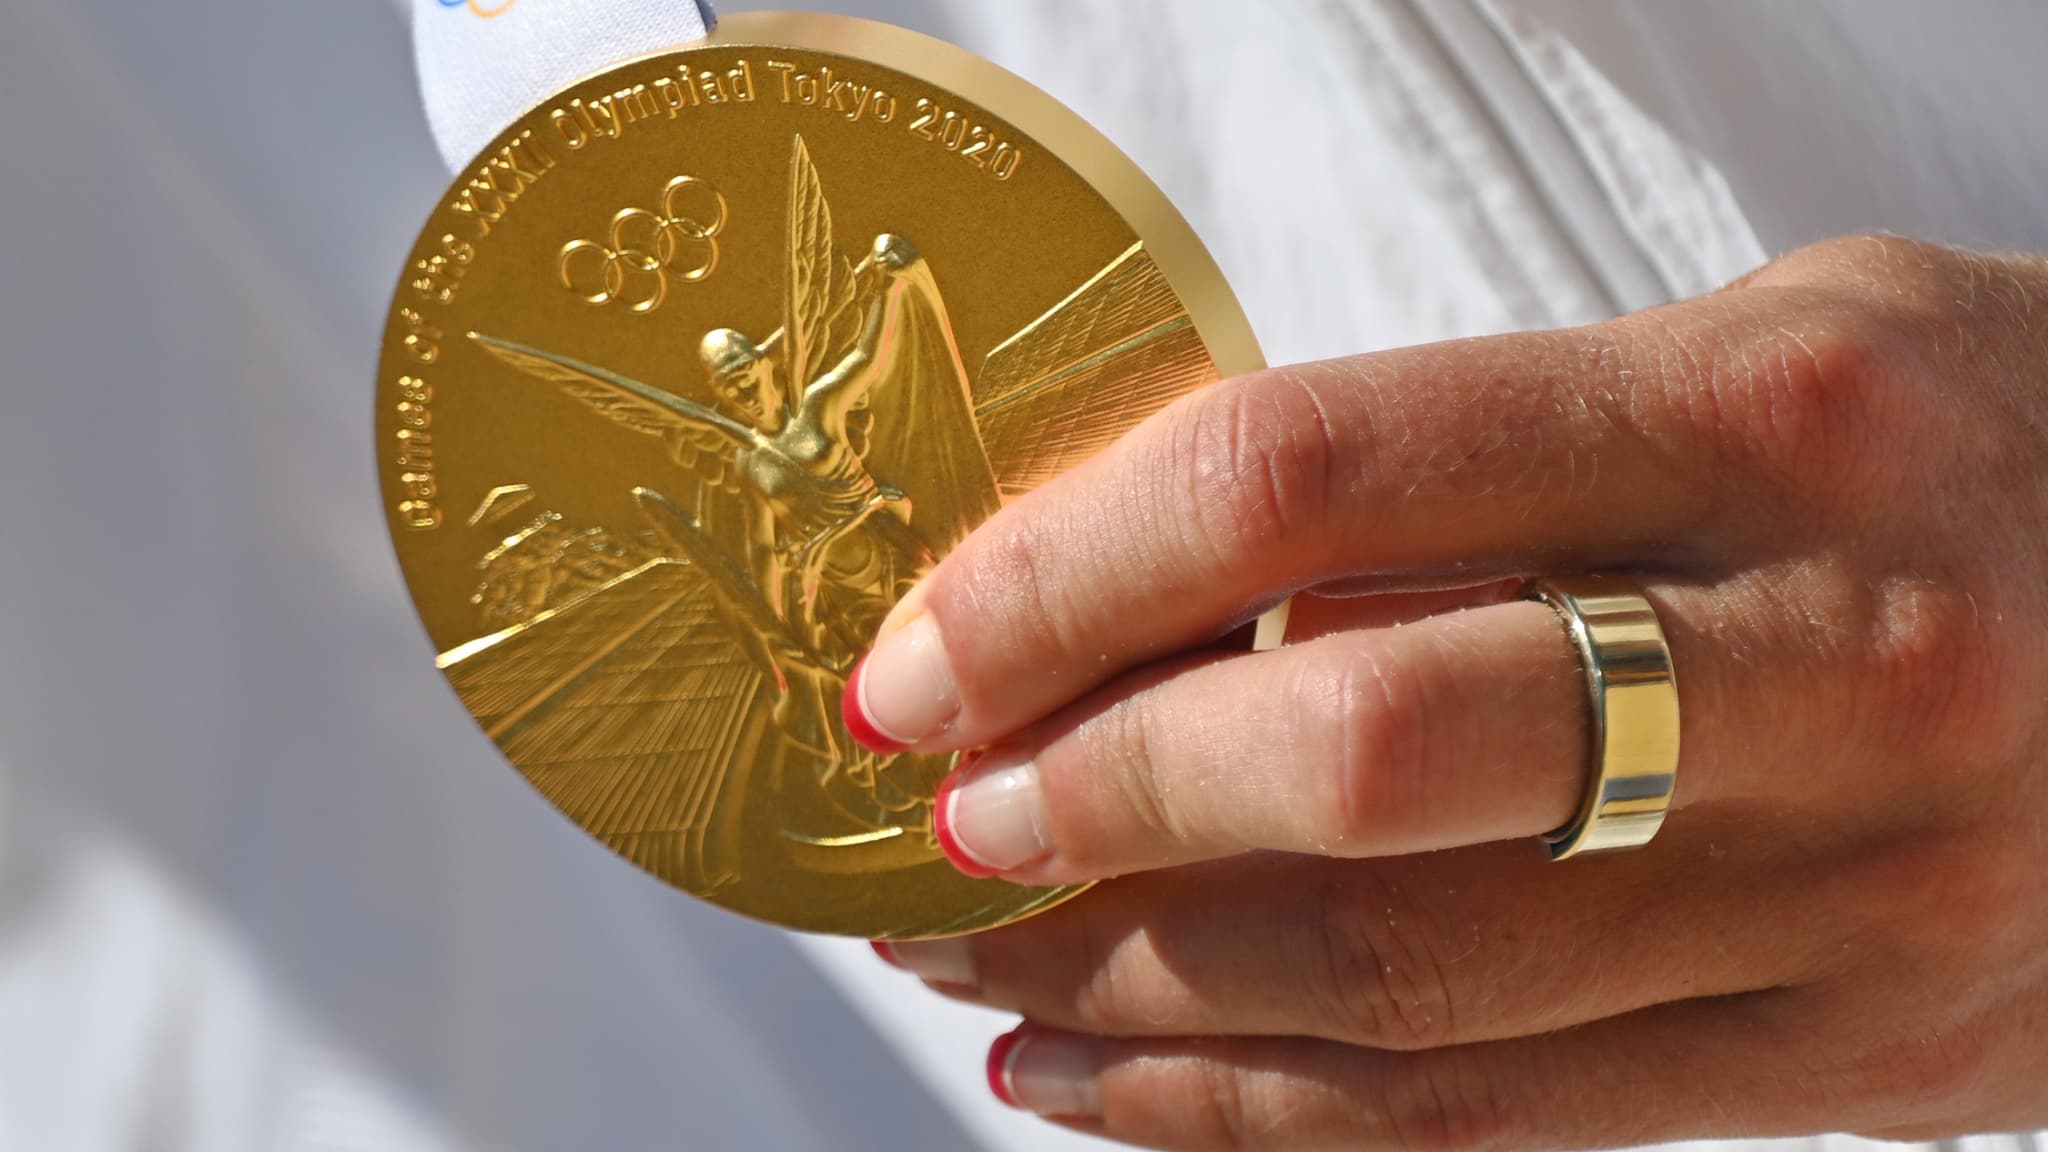 Une médaille d’or coûte 40 millions d’euros